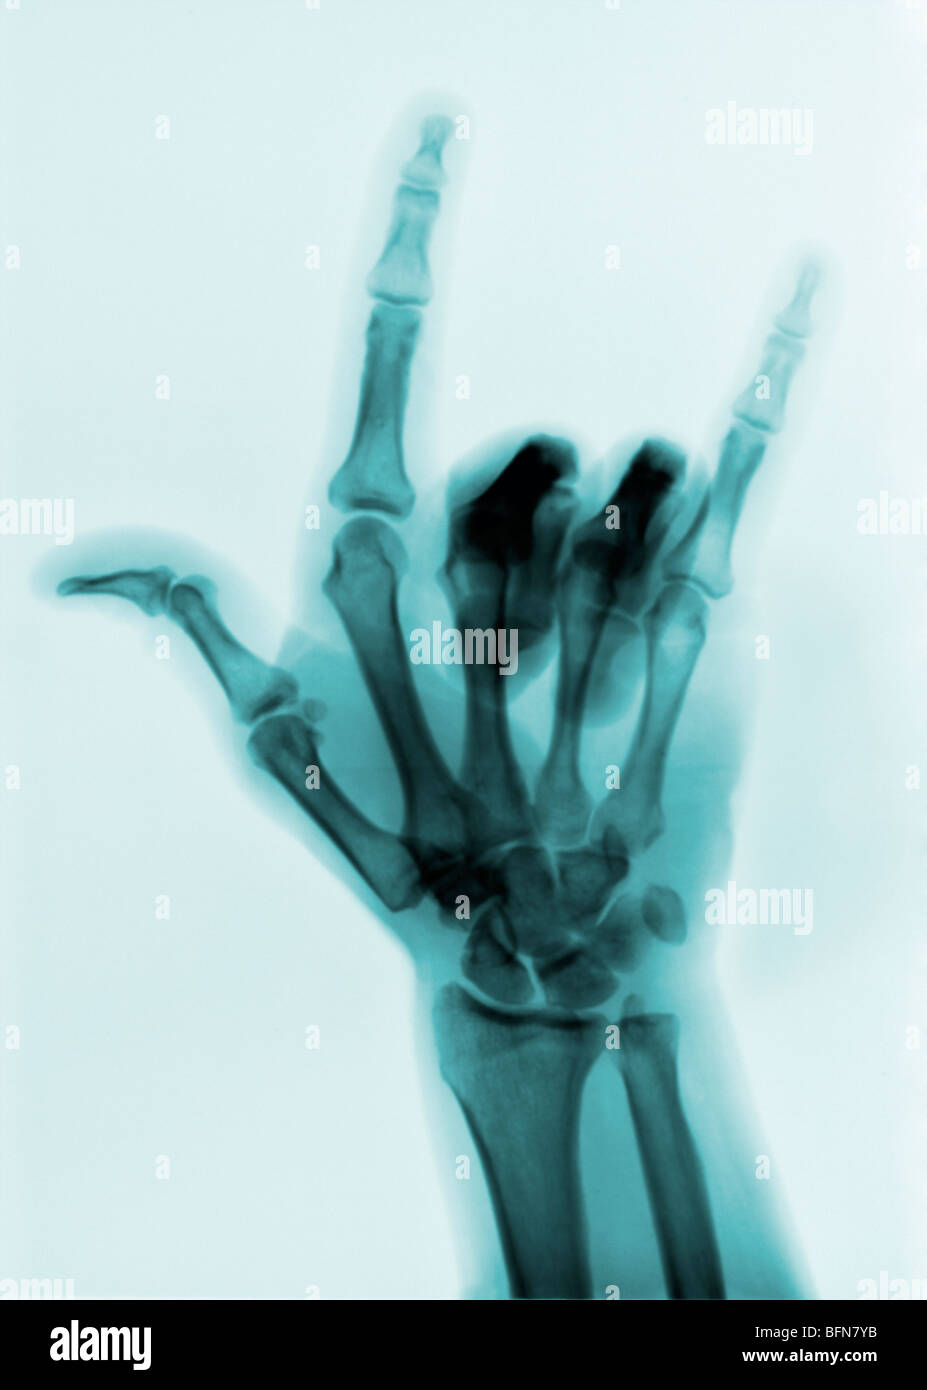 X-ray shoing la langue des signes pour "I love you" Banque D'Images